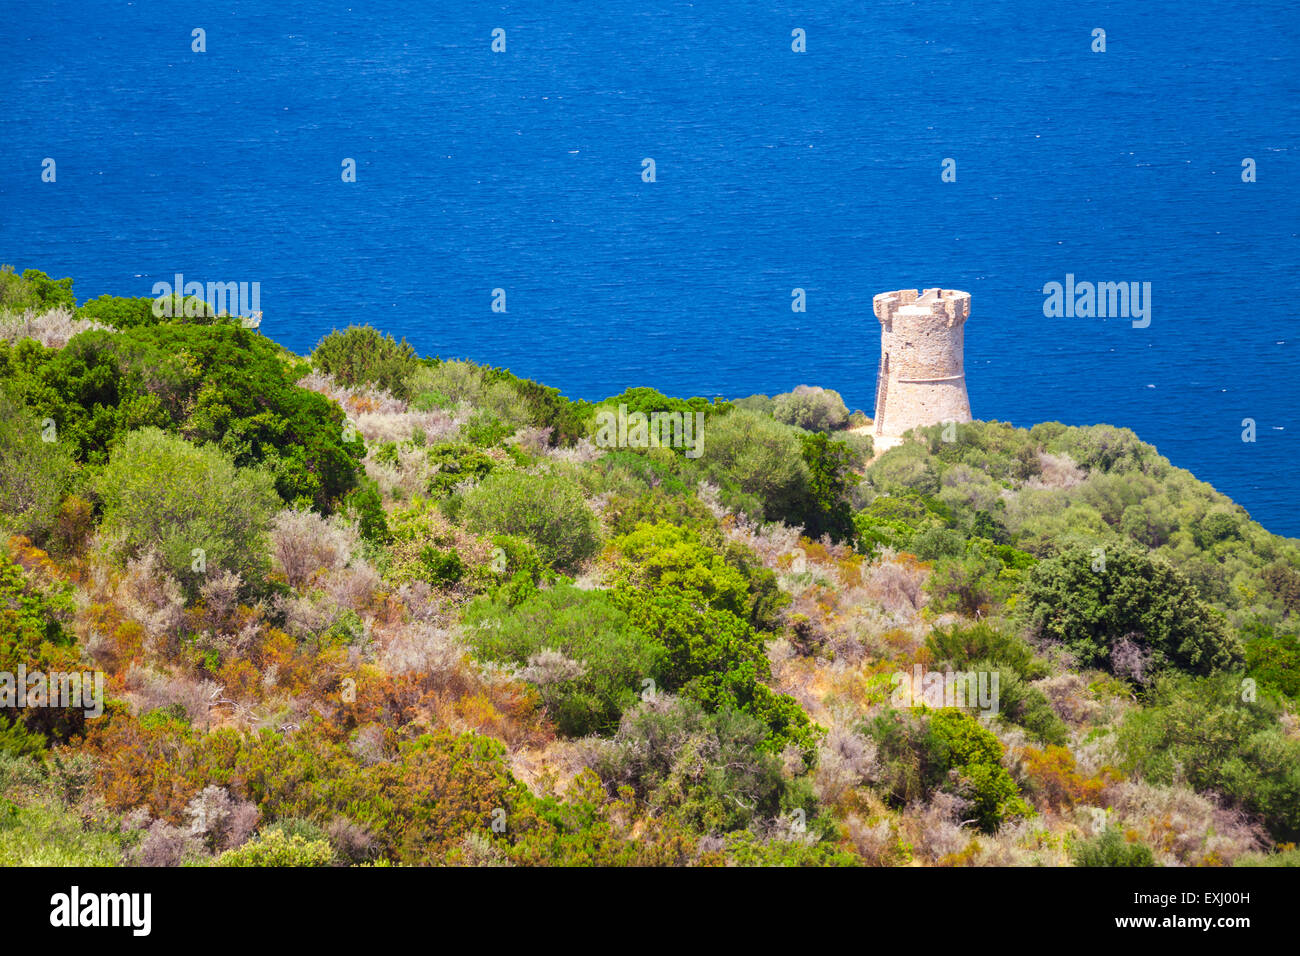 El paisaje de la bahía de Cupabia con antiguos genoveses Campanella torre, Córcega, Francia Foto de stock